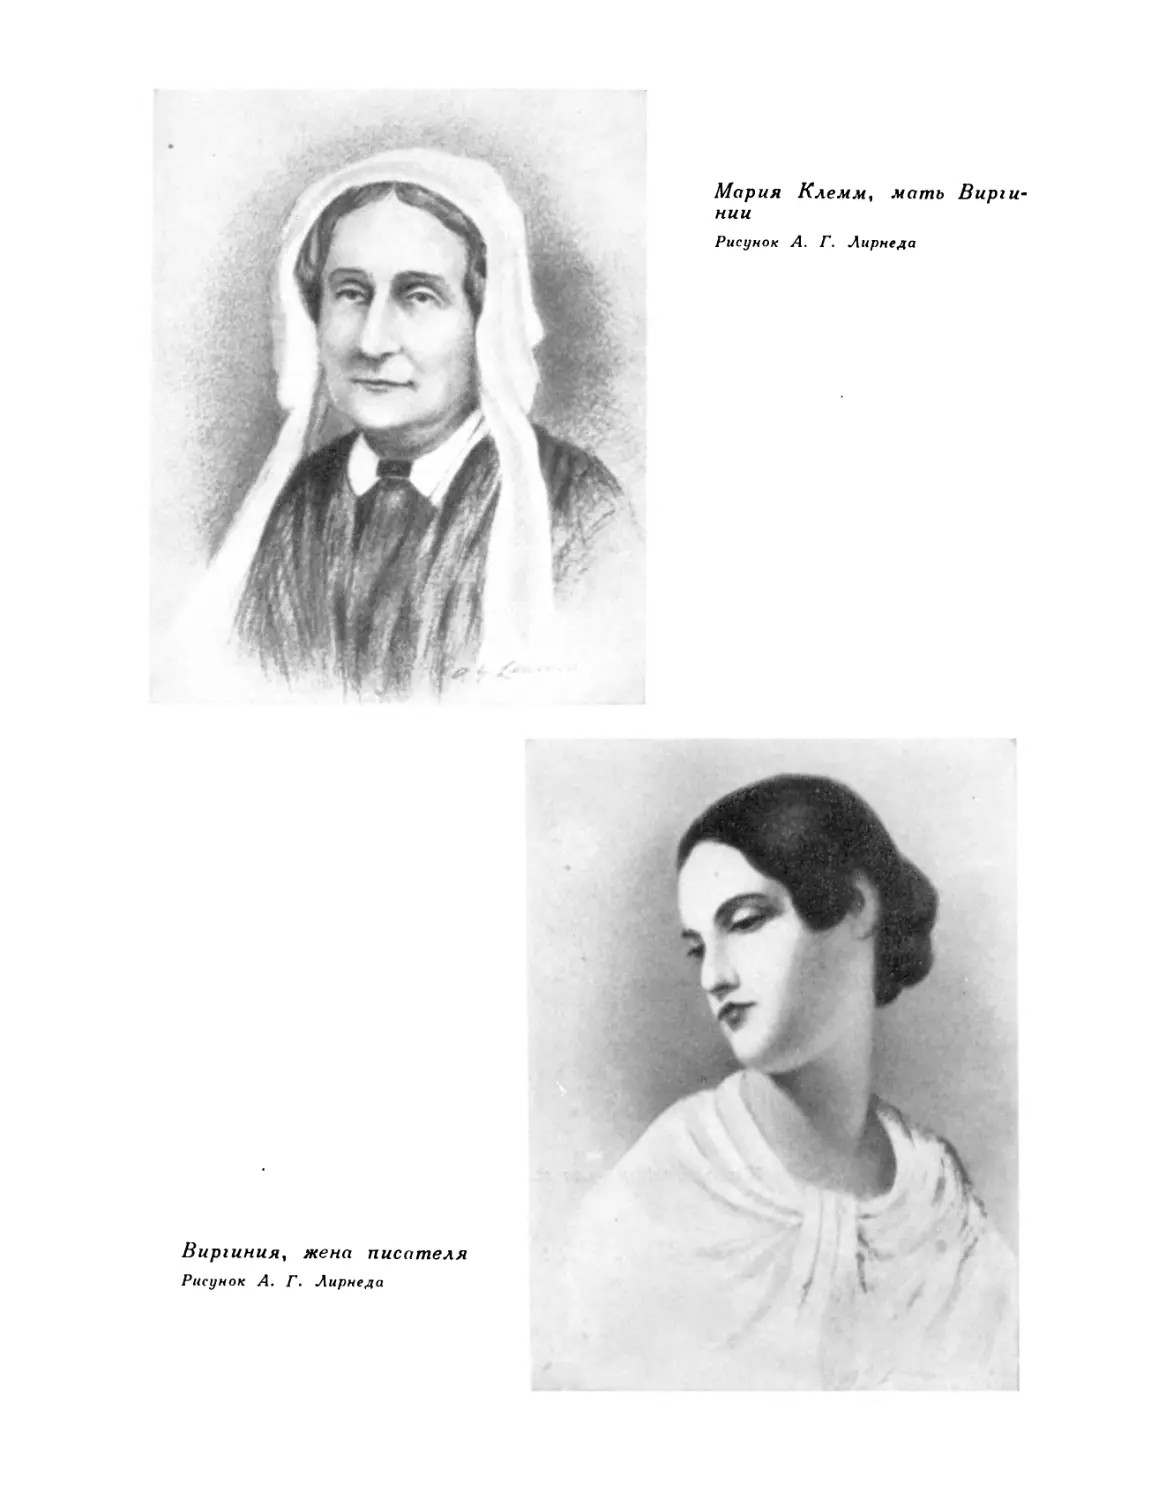 Мария Клемм, мать Виргинии. Рисунок А. Г. Лирнеда; Виргиния, жена писателя. Рисунок А. Г. Лирнеда